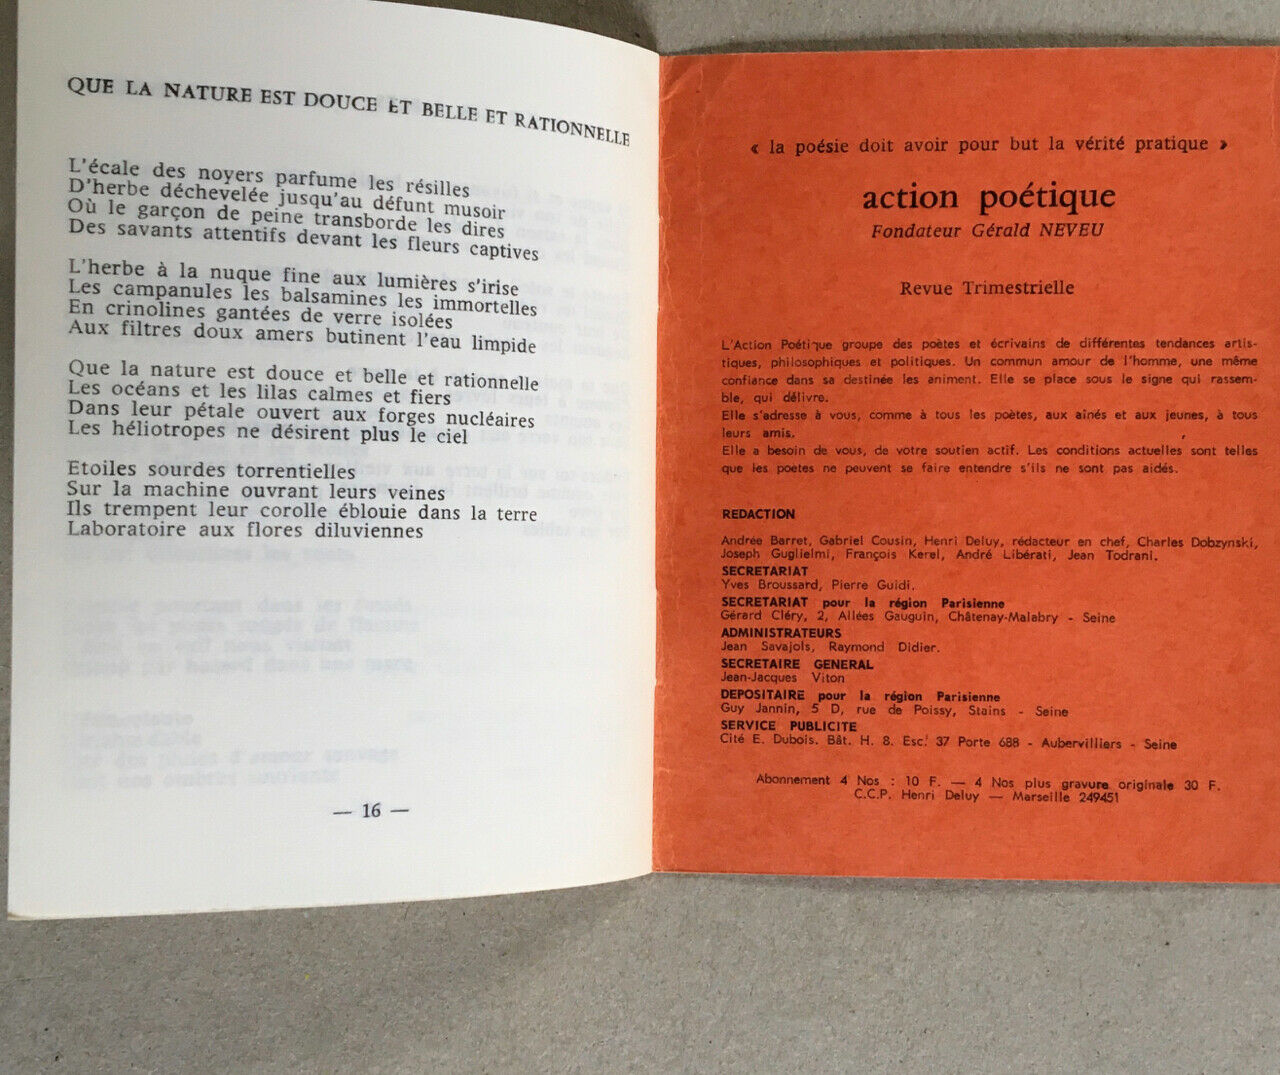 [Liliane Atlan] Galil — Le Maître-mur — Action poétique 18 — envoi — 1964.